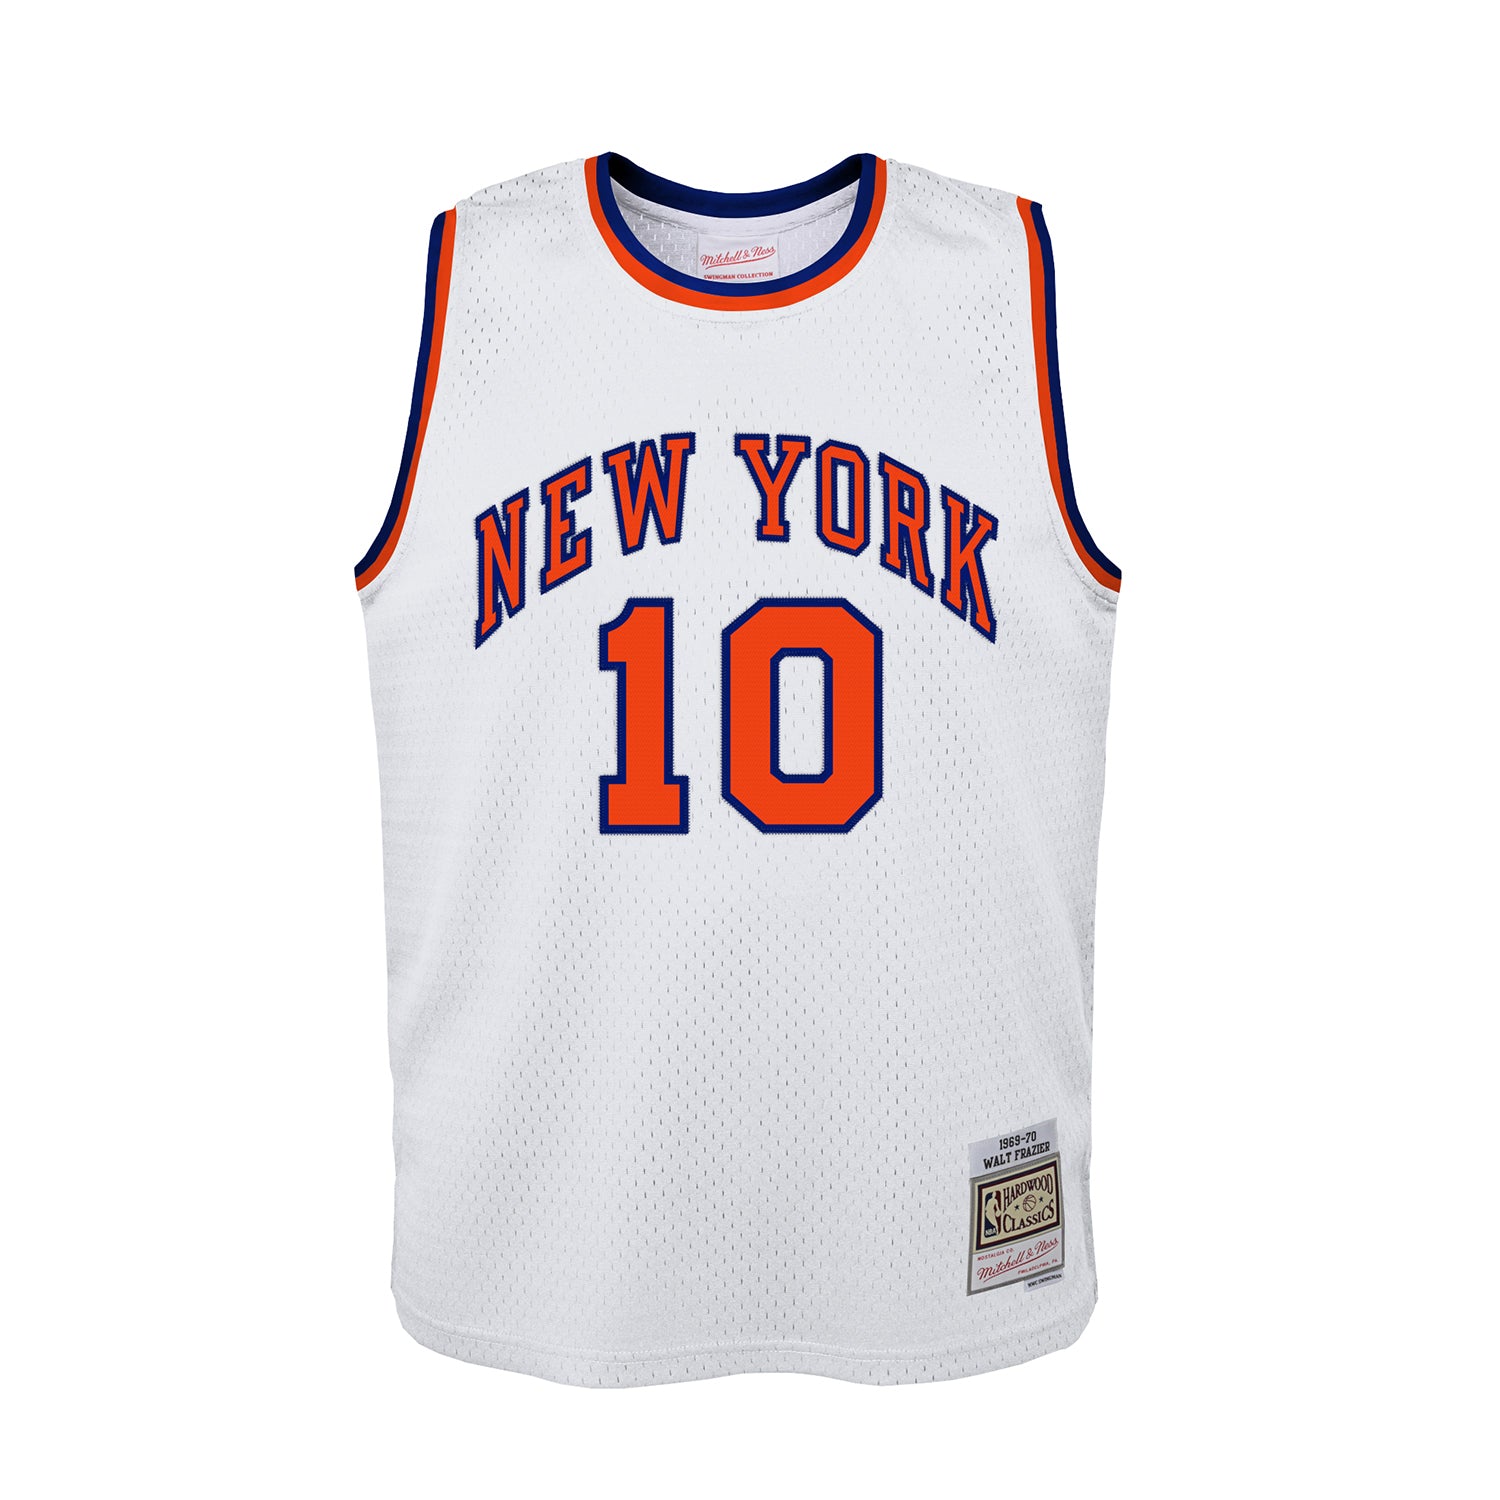 Kids New York Knicks Gear, Youth Knicks Apparel, Merchandise